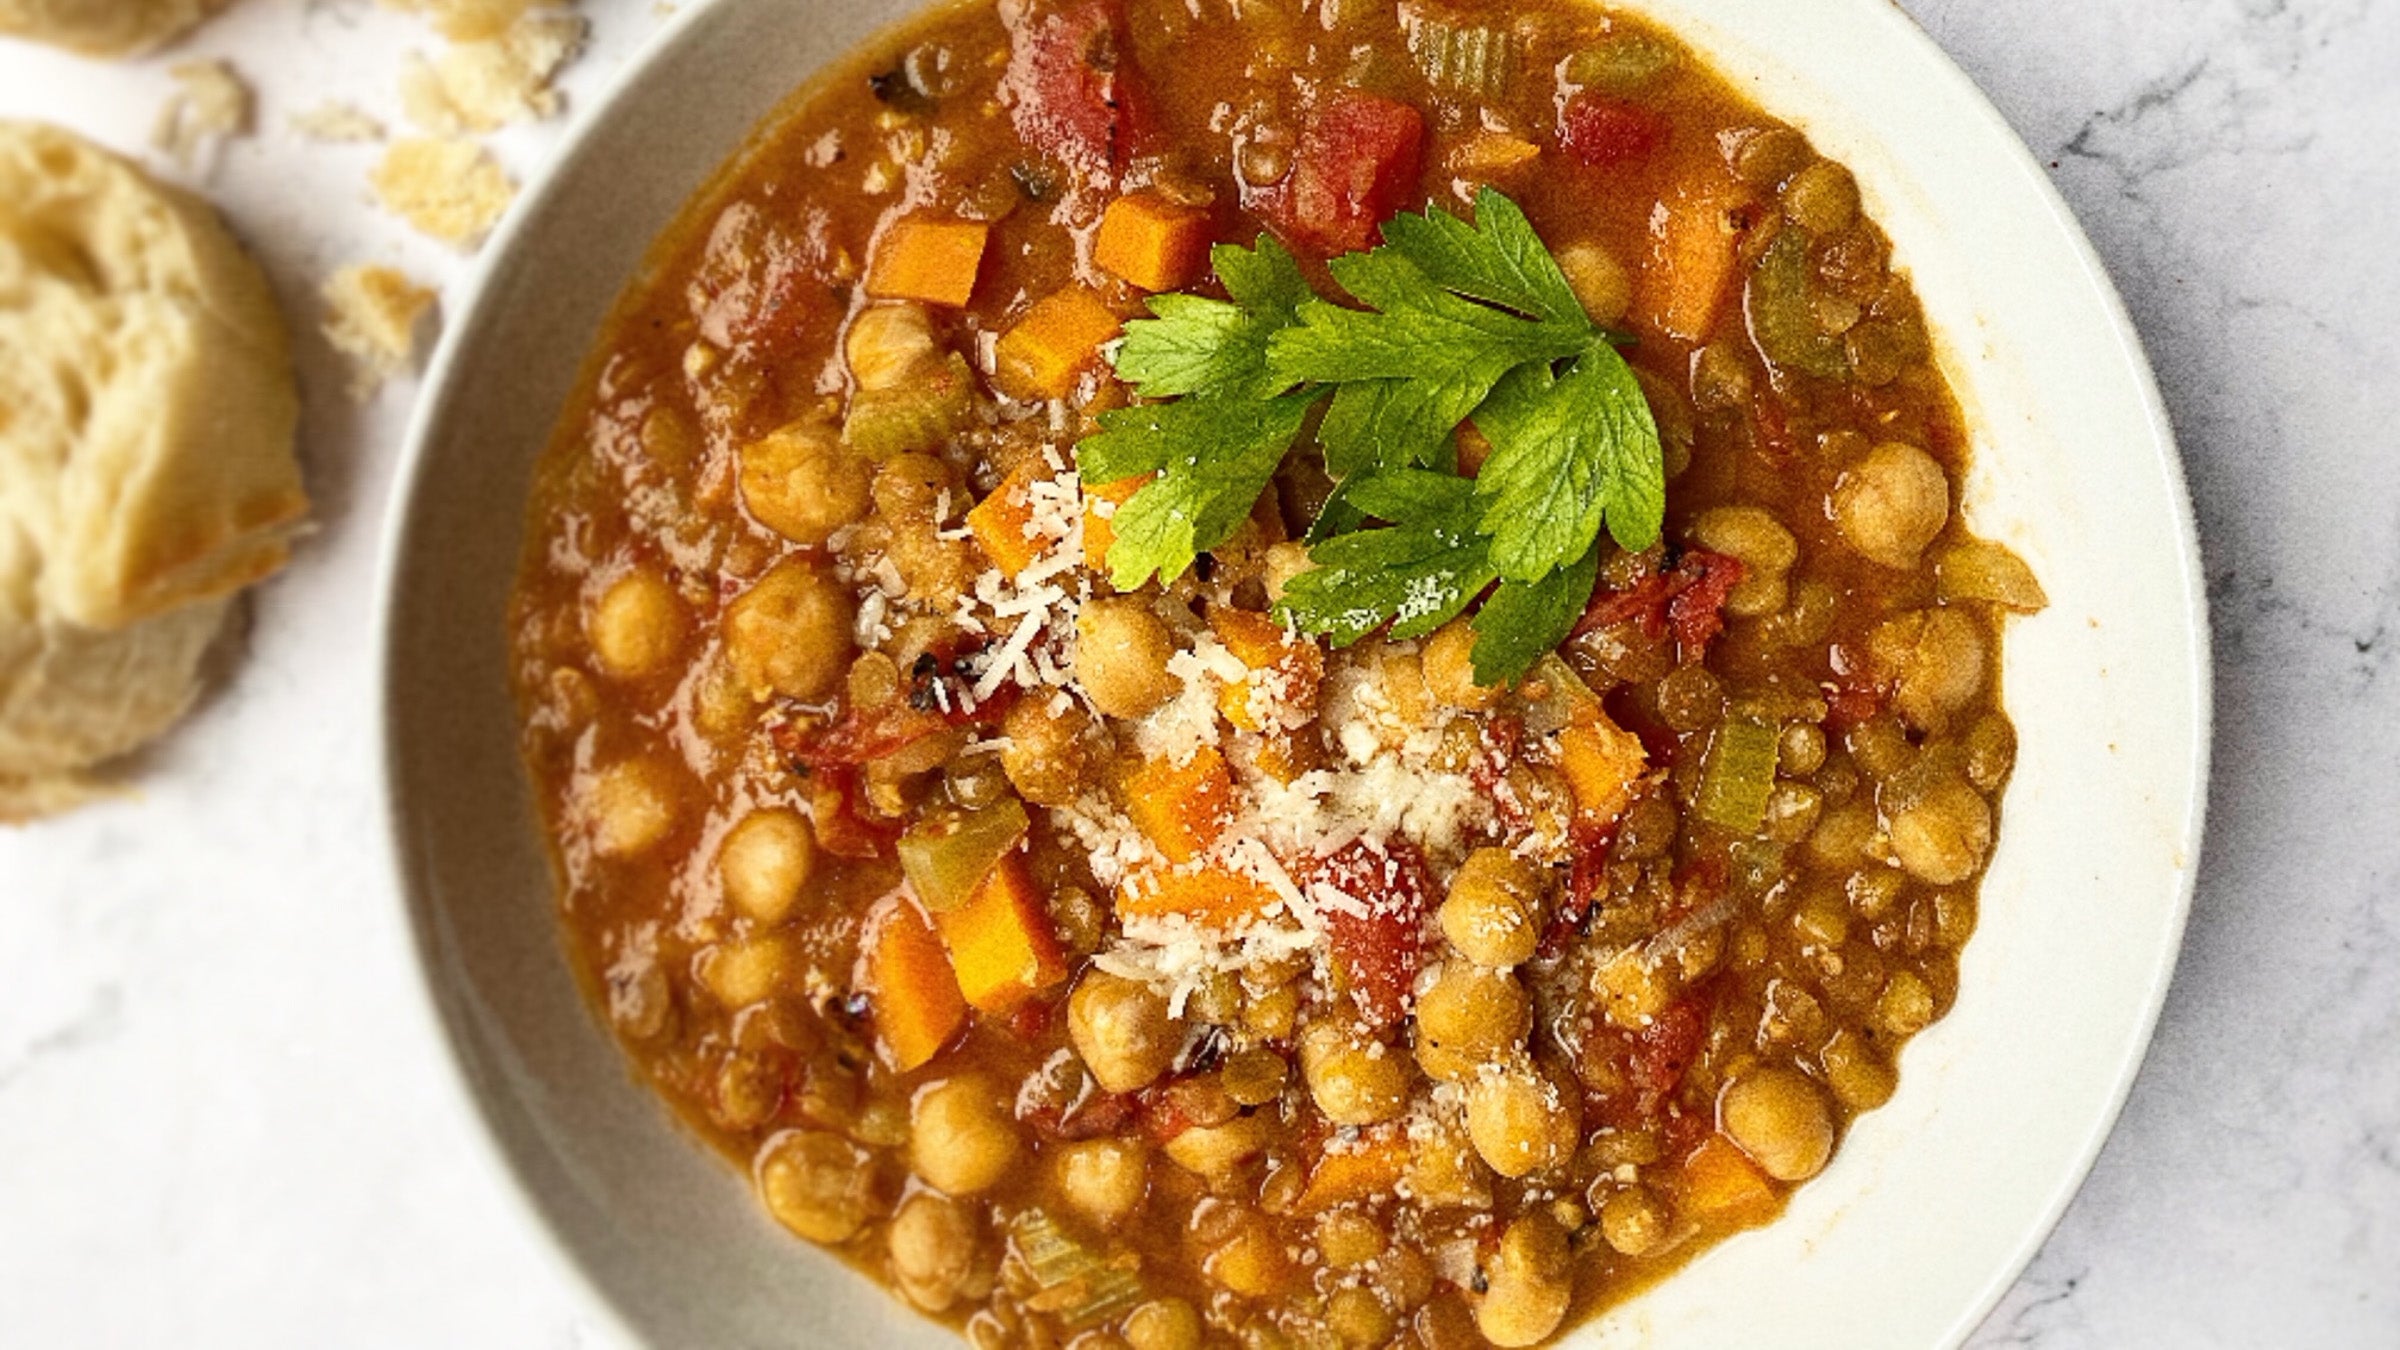 Bowl of Instant Pot lentil soup